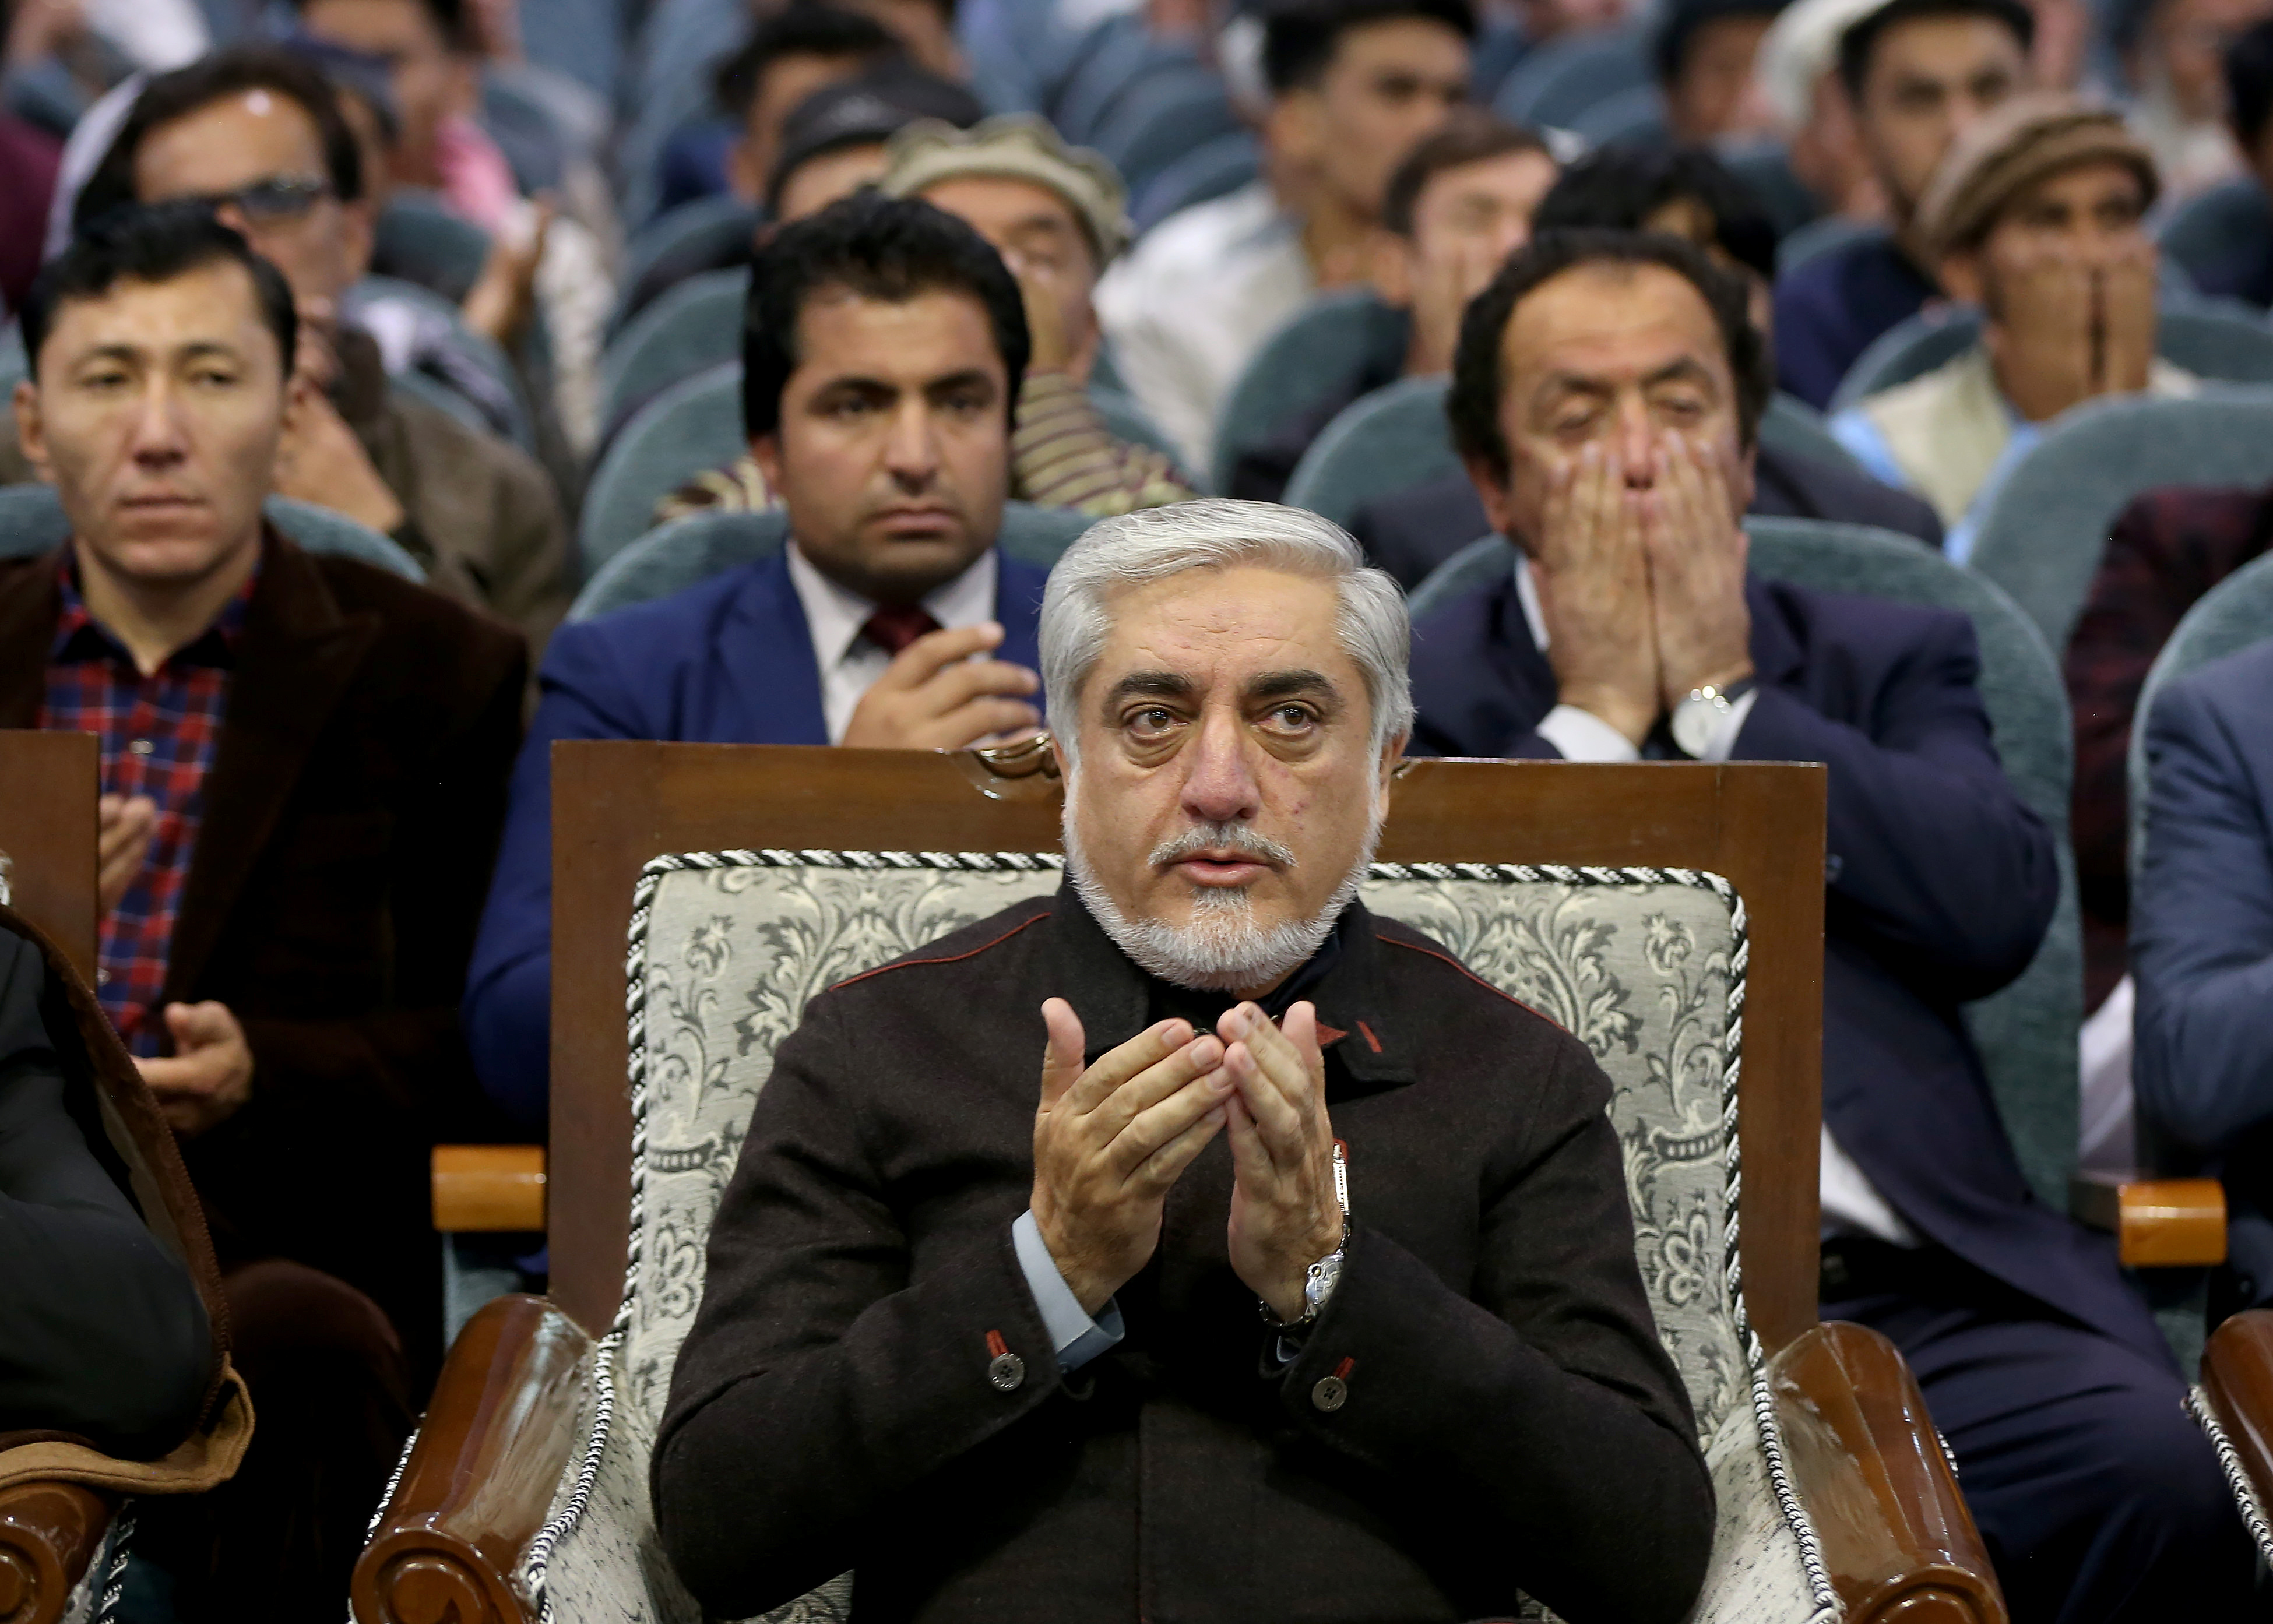 Abdullah había reclamado la victoria antes de que se contabilizaran las papeletas, al igual que el otro candidato, Ghani